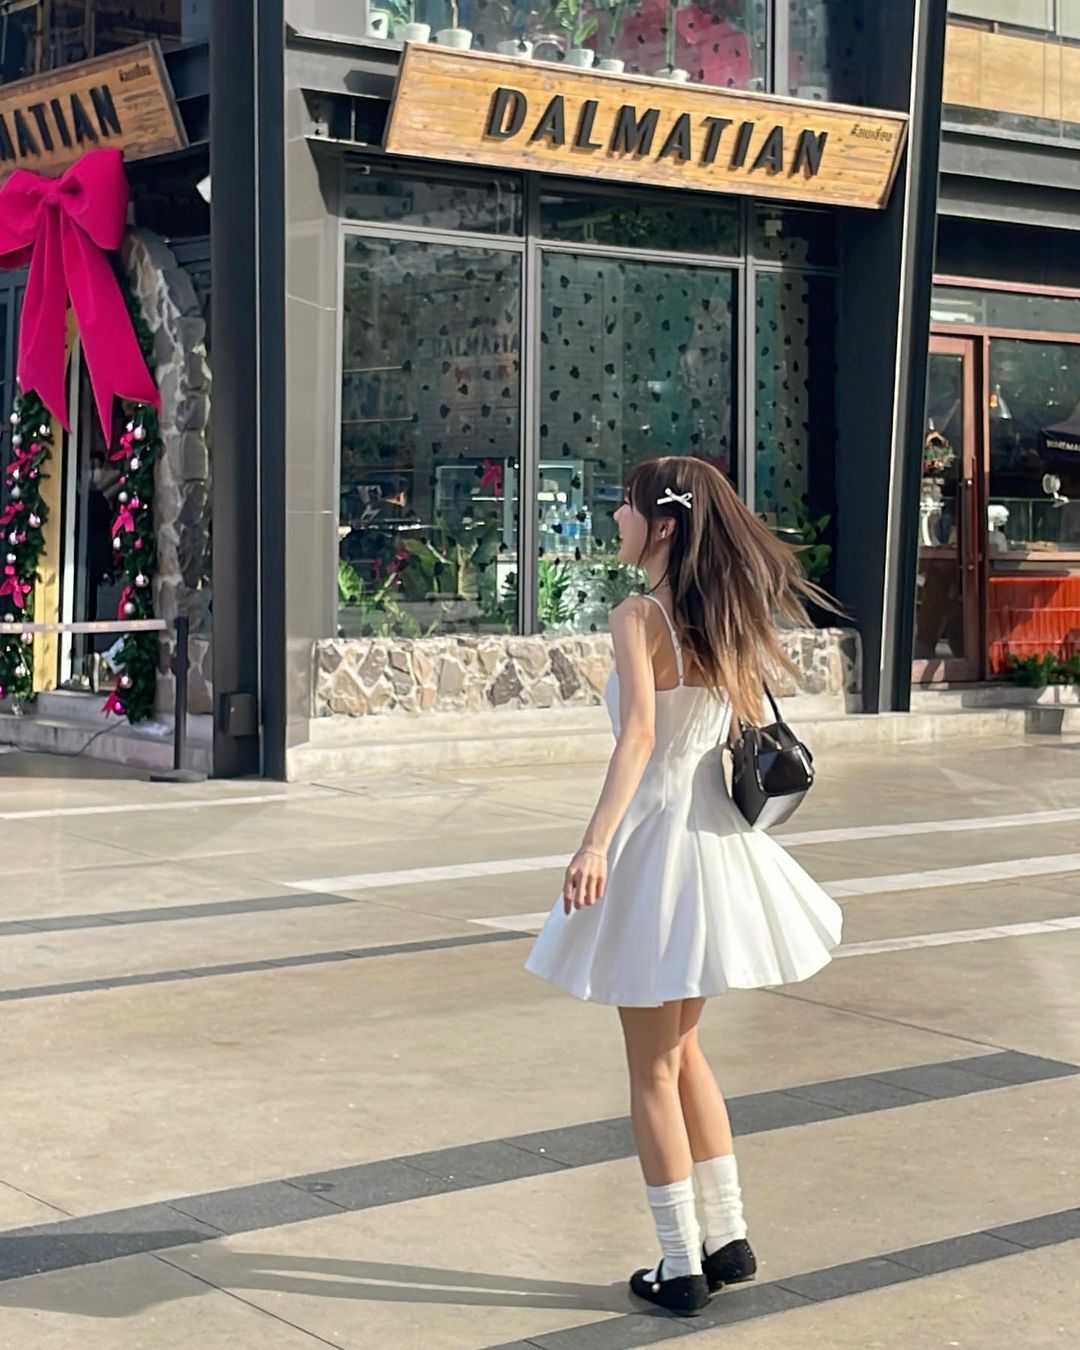 一位穿著白色百合迷你裙🌹倒數優惠至5月19日、背著黑色錢包的女士走過一家名為“達爾馬提亞”的商店，店裡裝飾著粉紅色大蝴蝶結和聖誕裝飾品。